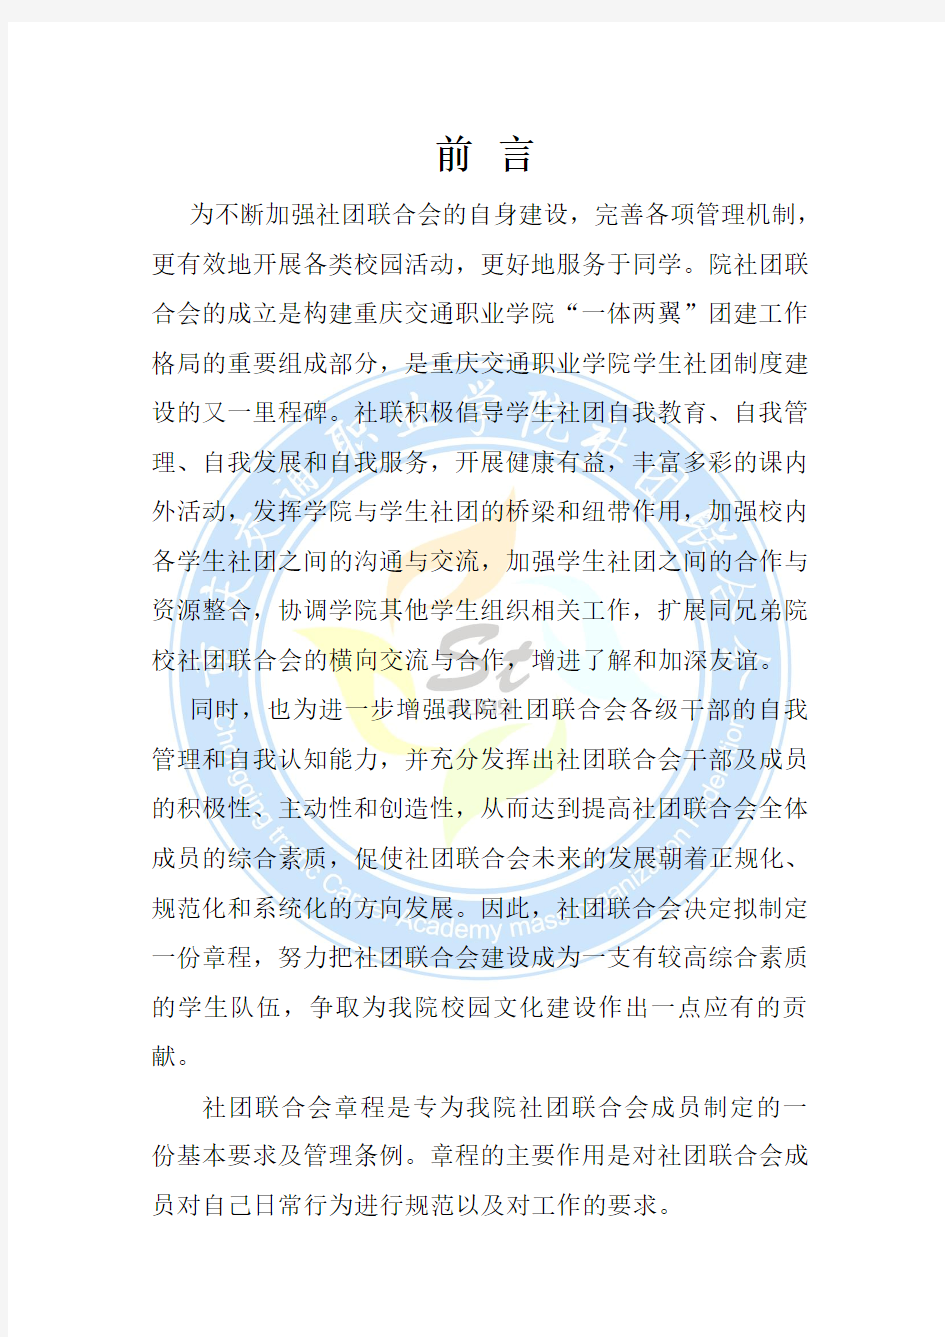 重庆交通职业学院社团联合会章程 2